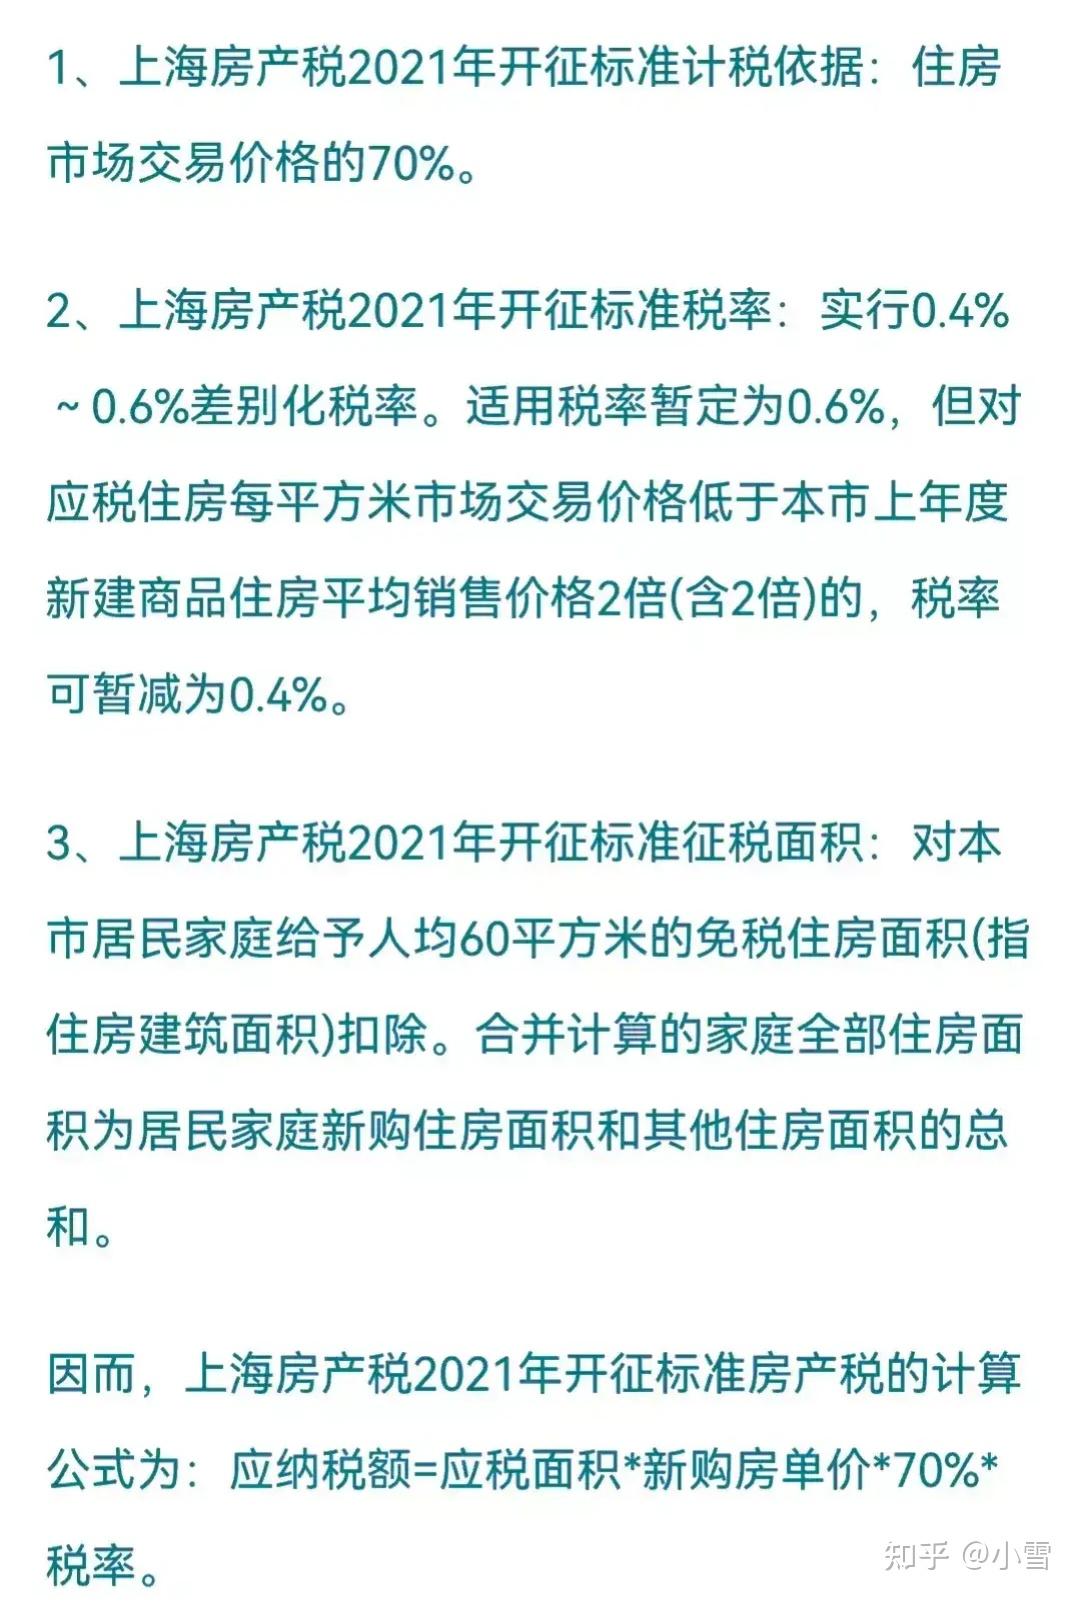 上海市的房产税出来了,2021正式开征朋友们自己看!不评论